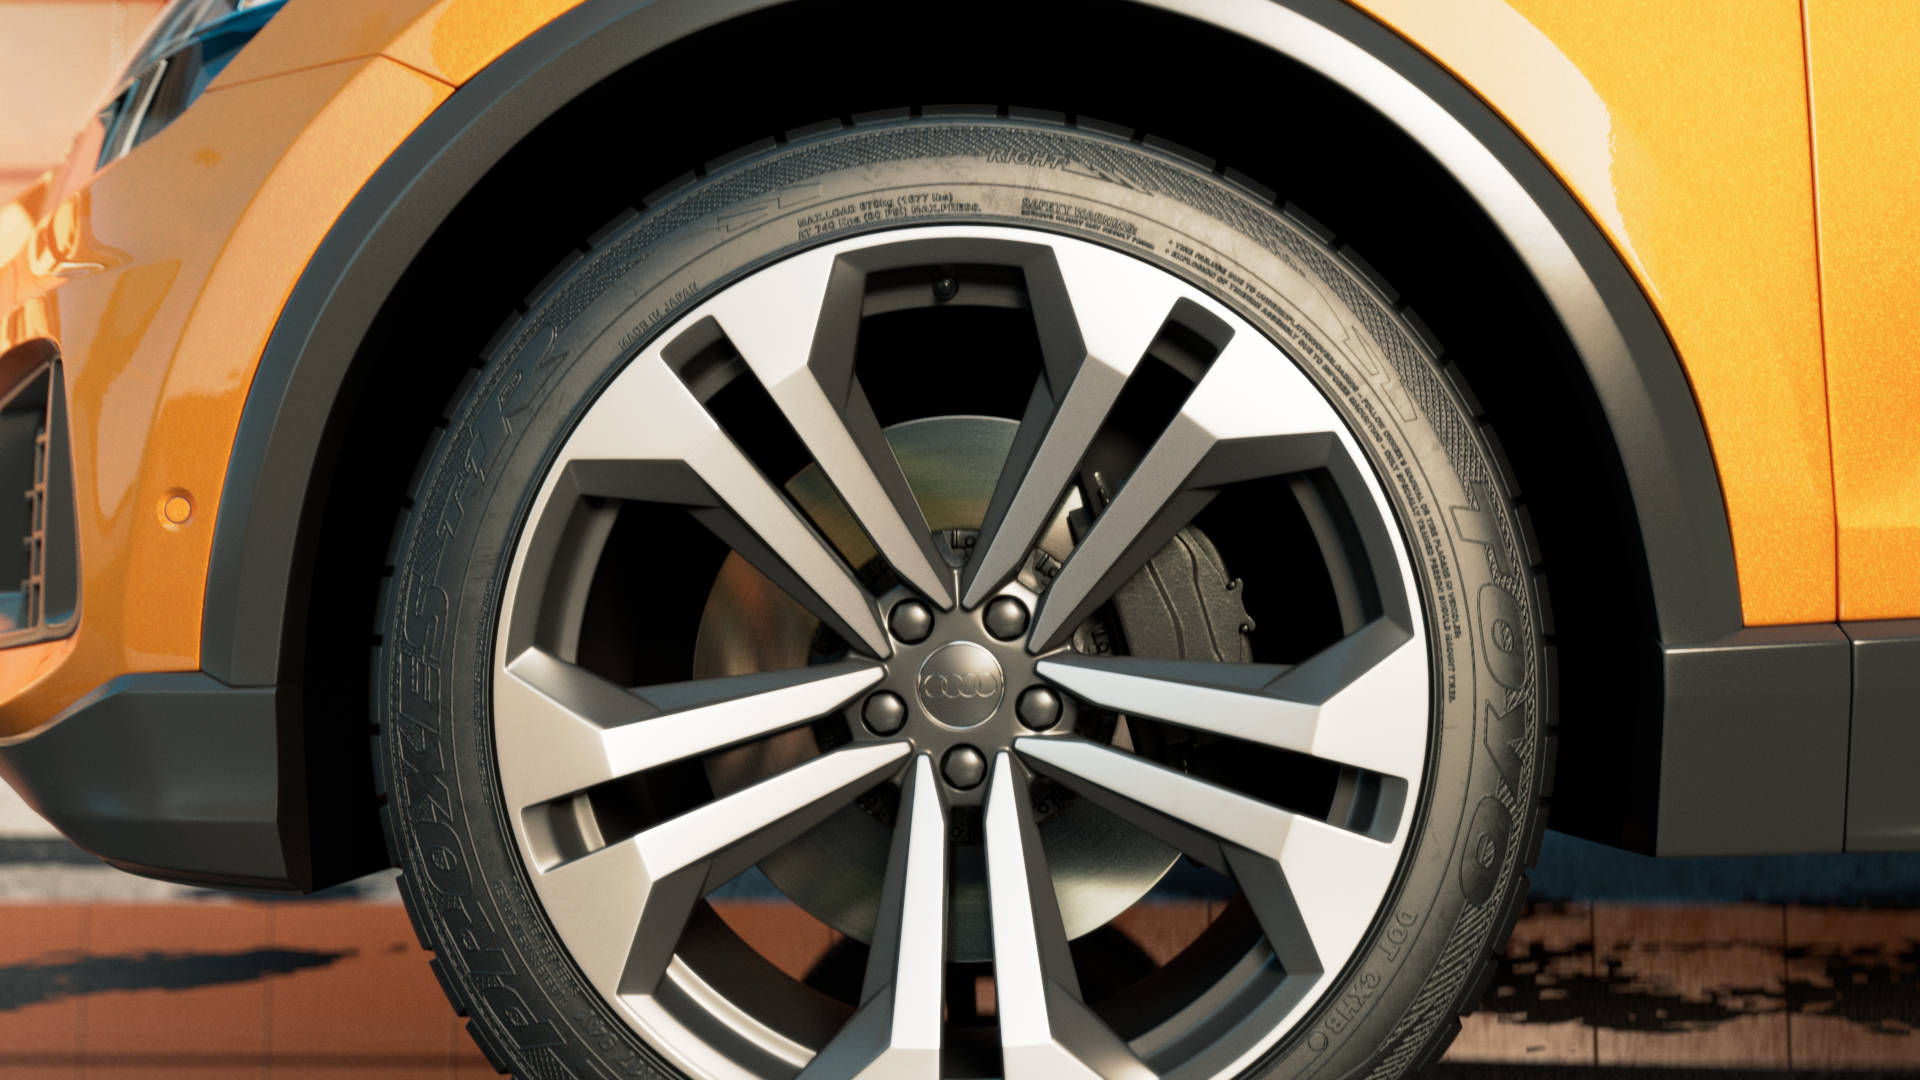 Audi Q8 tire and rim.